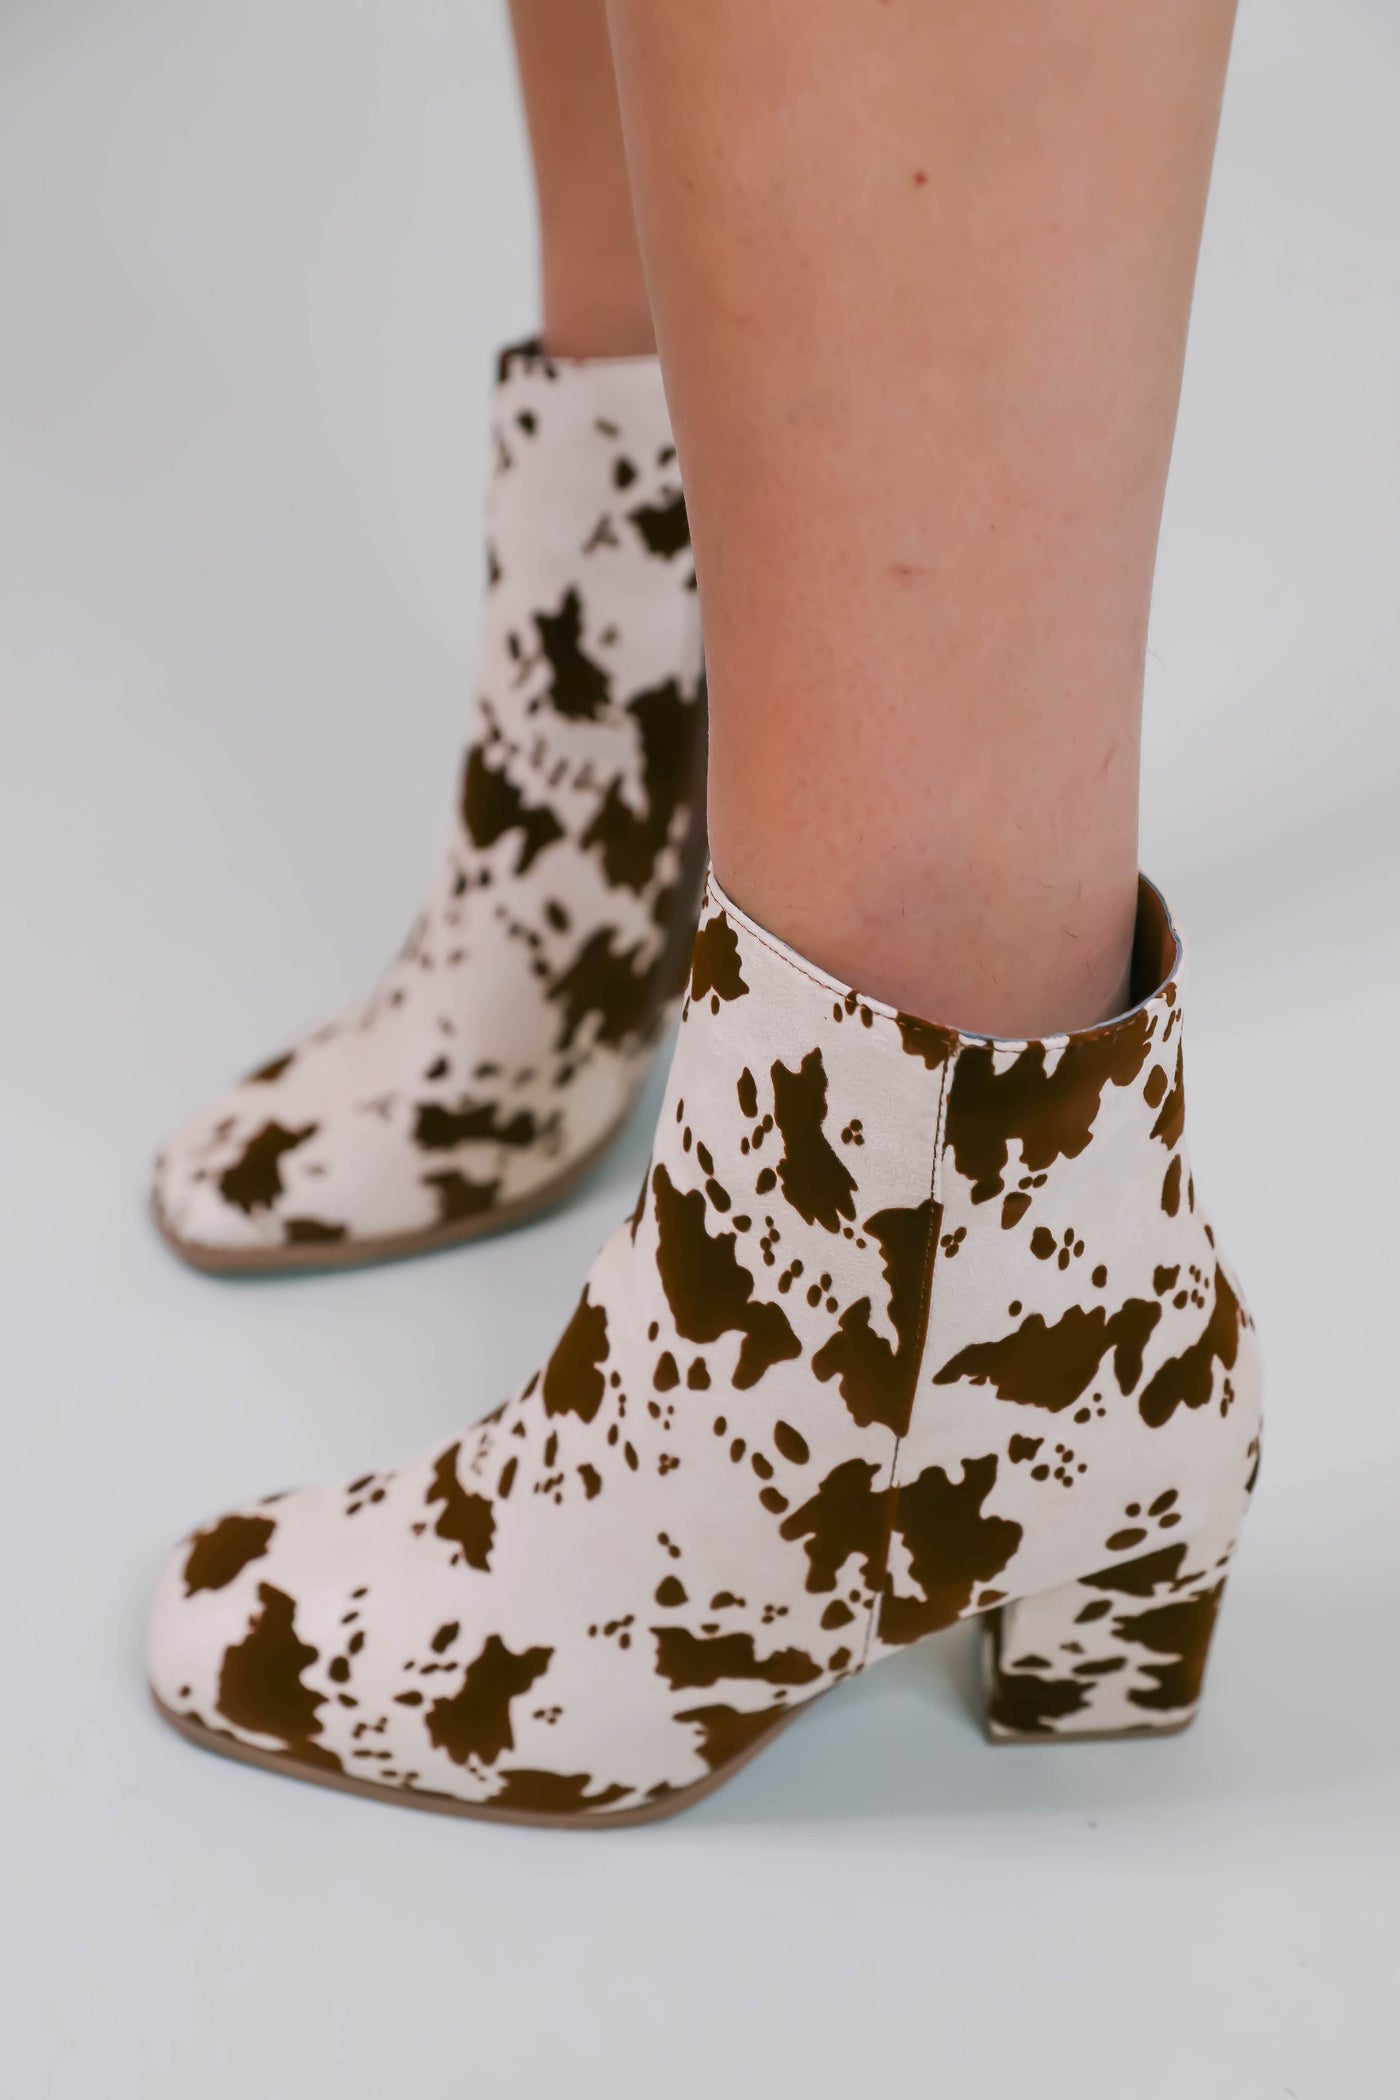 Women's Cow Print Booties- Women's Western Cow Boot- Pierre Dumas Booties